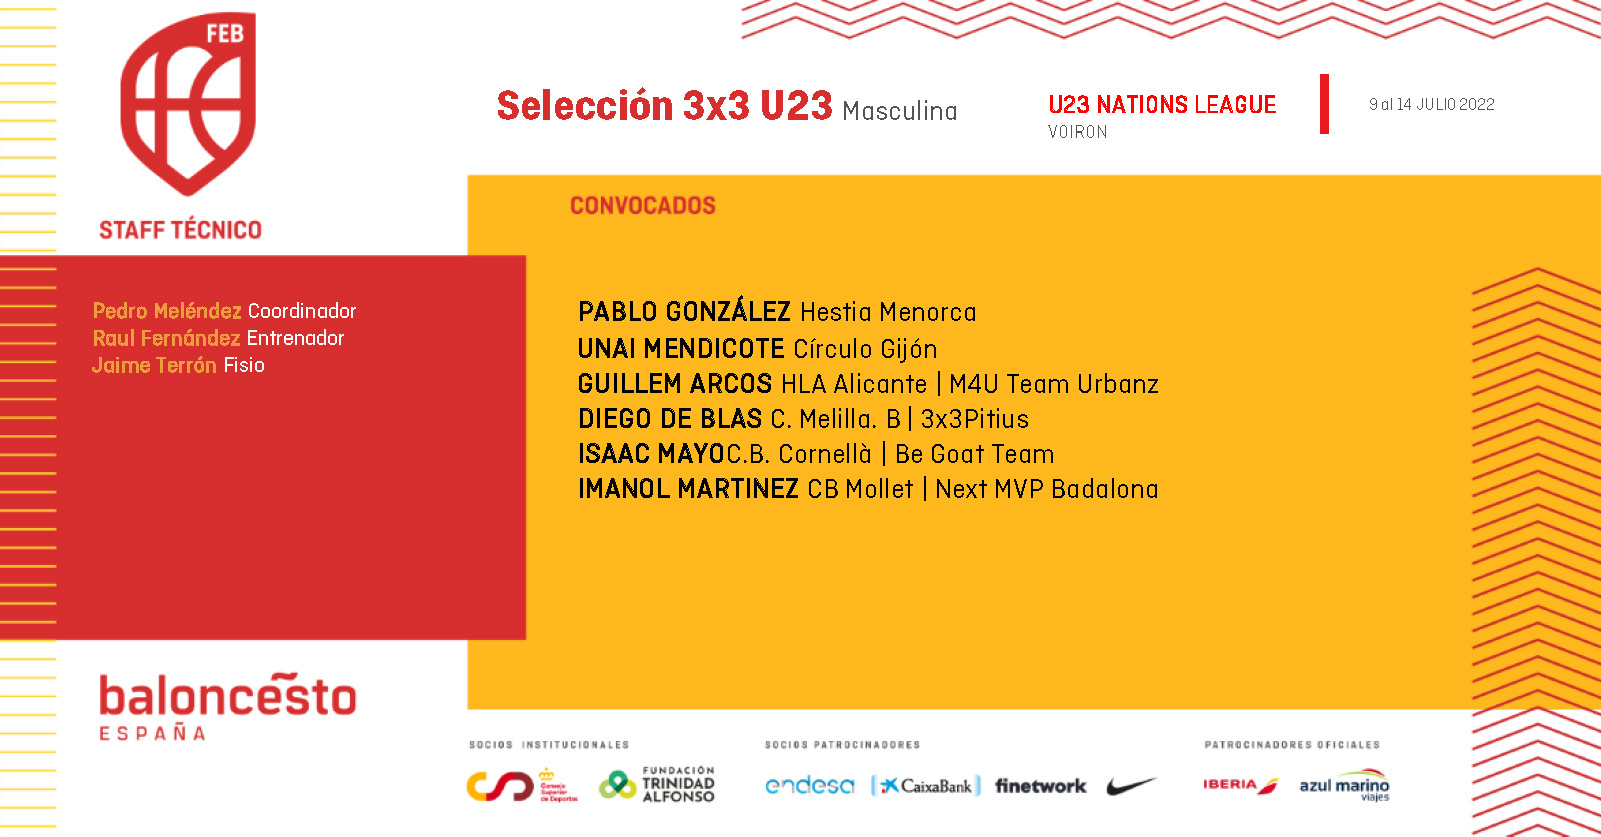 Convocatoria Selección 3x3 U23 Masculina. Nations League (Voiron)